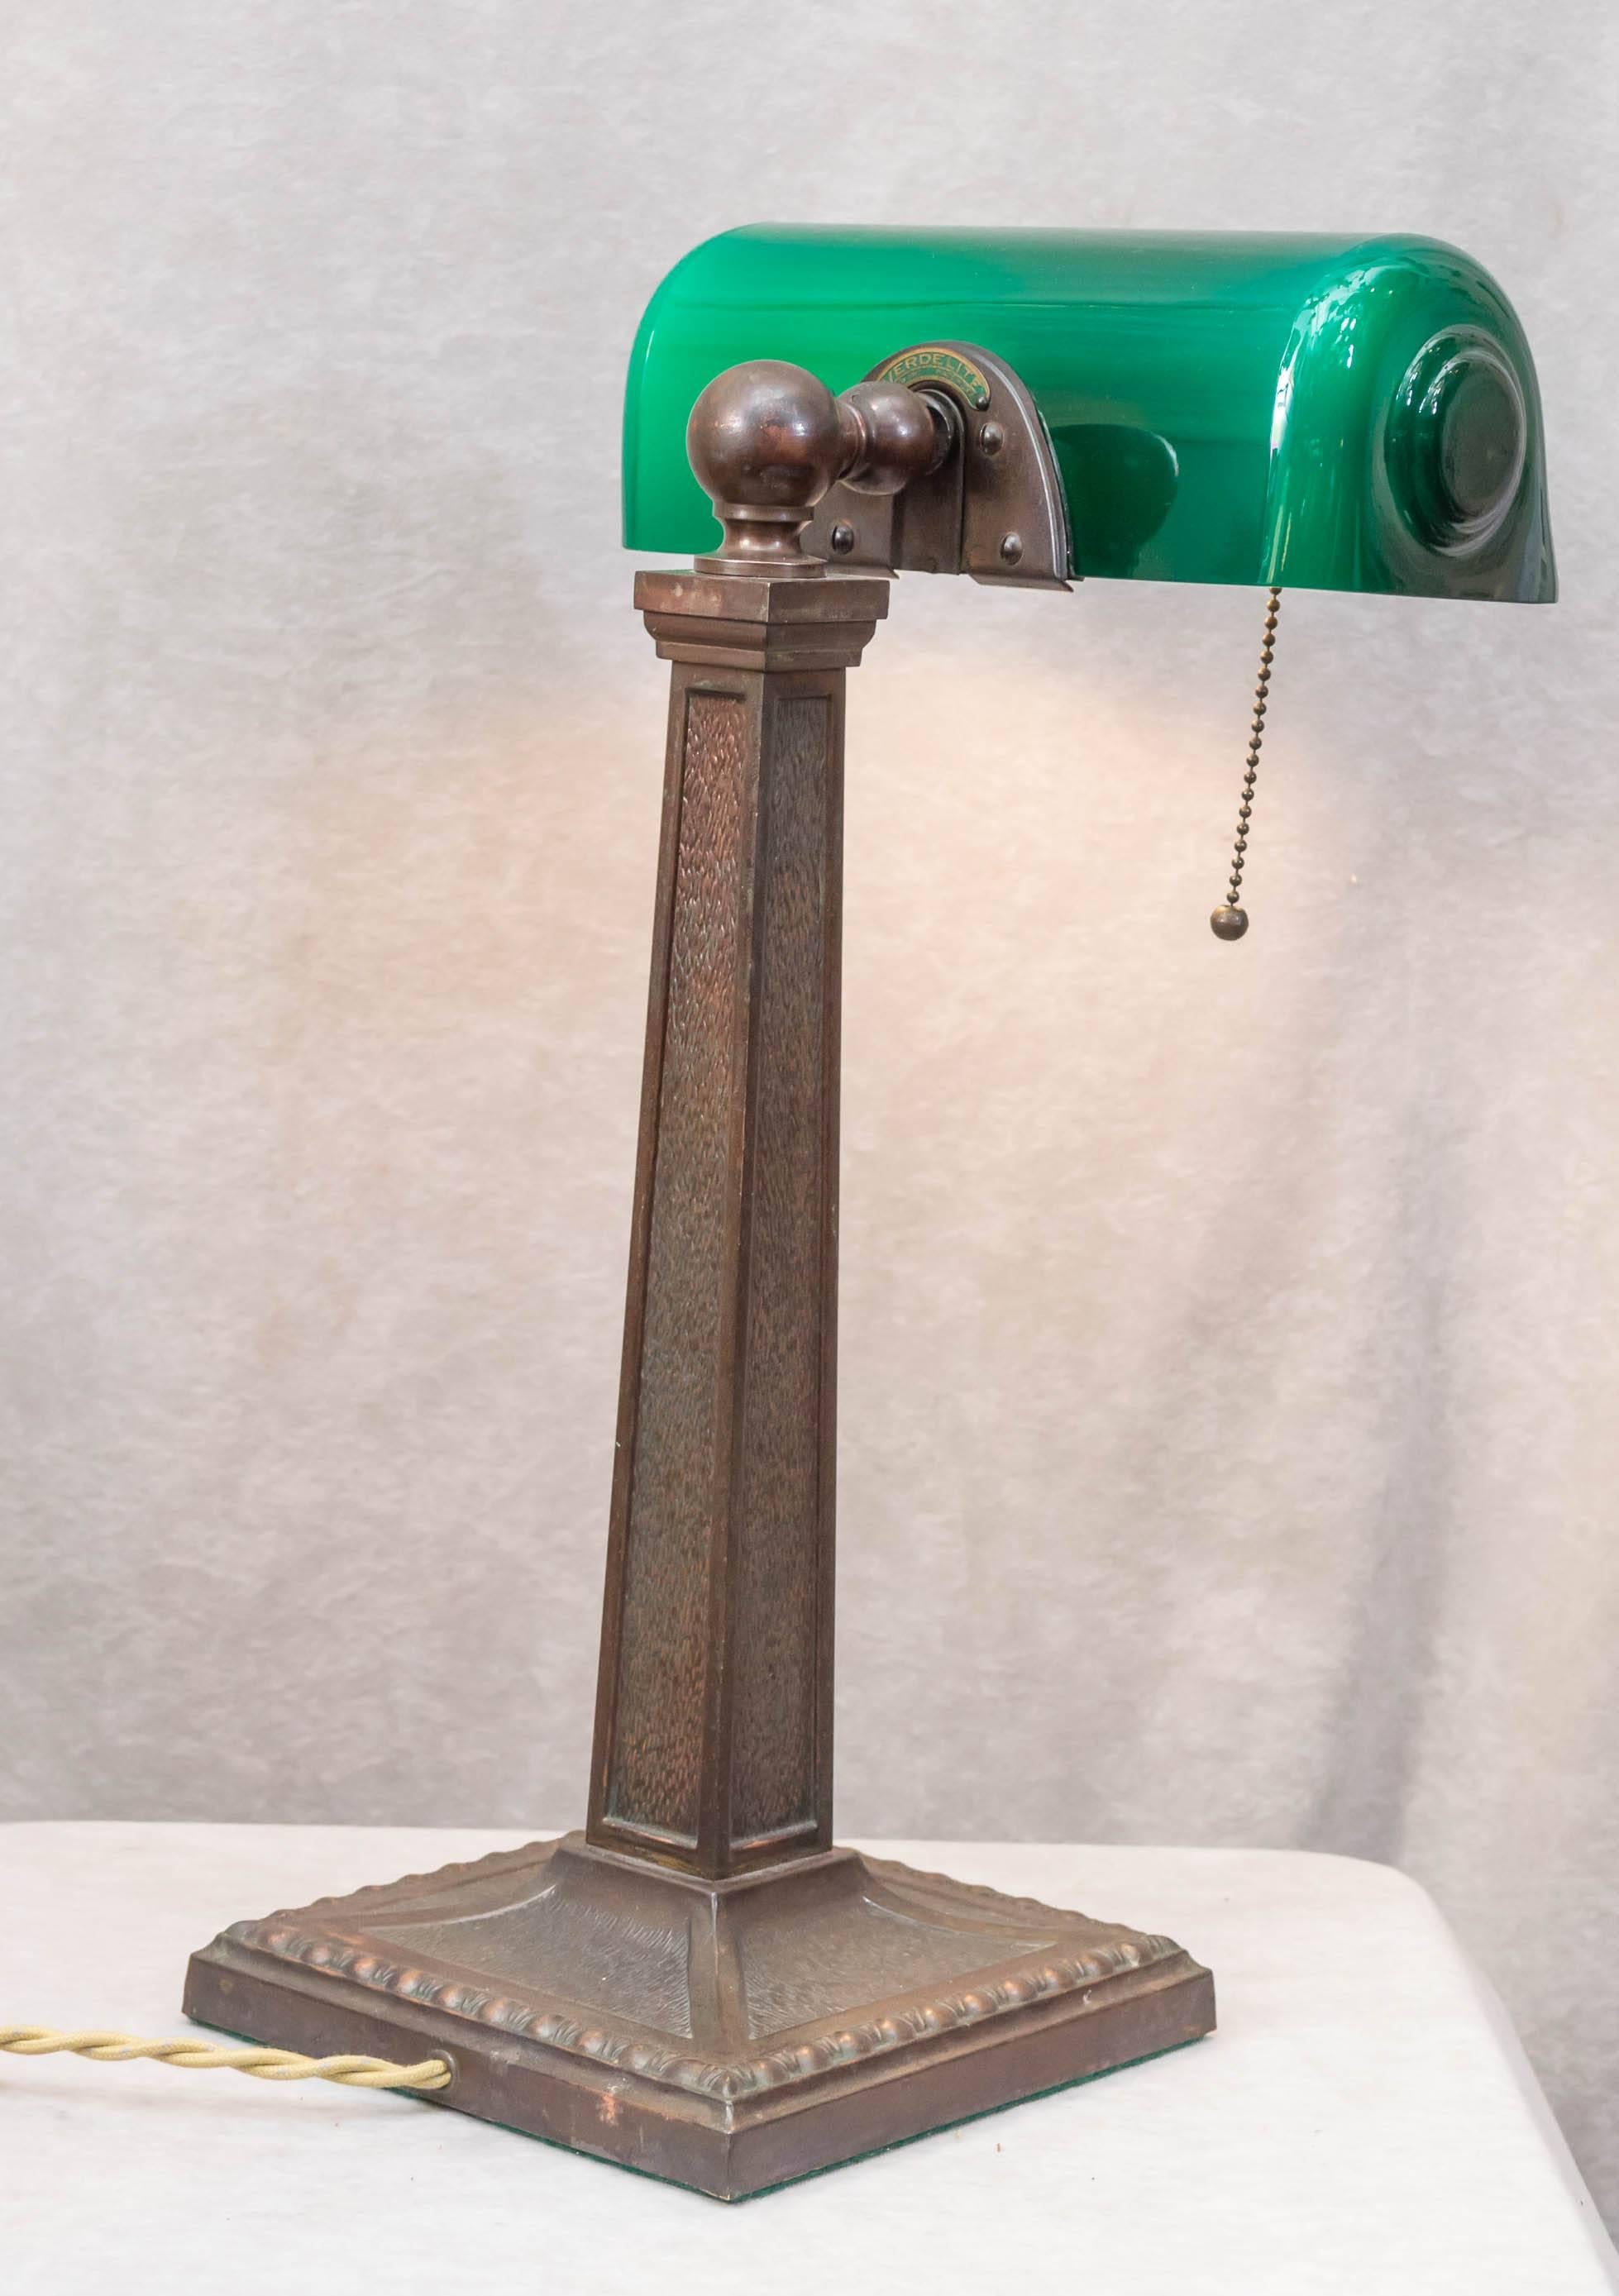 Edwardian Banker's Desk Lamp by Verdelite